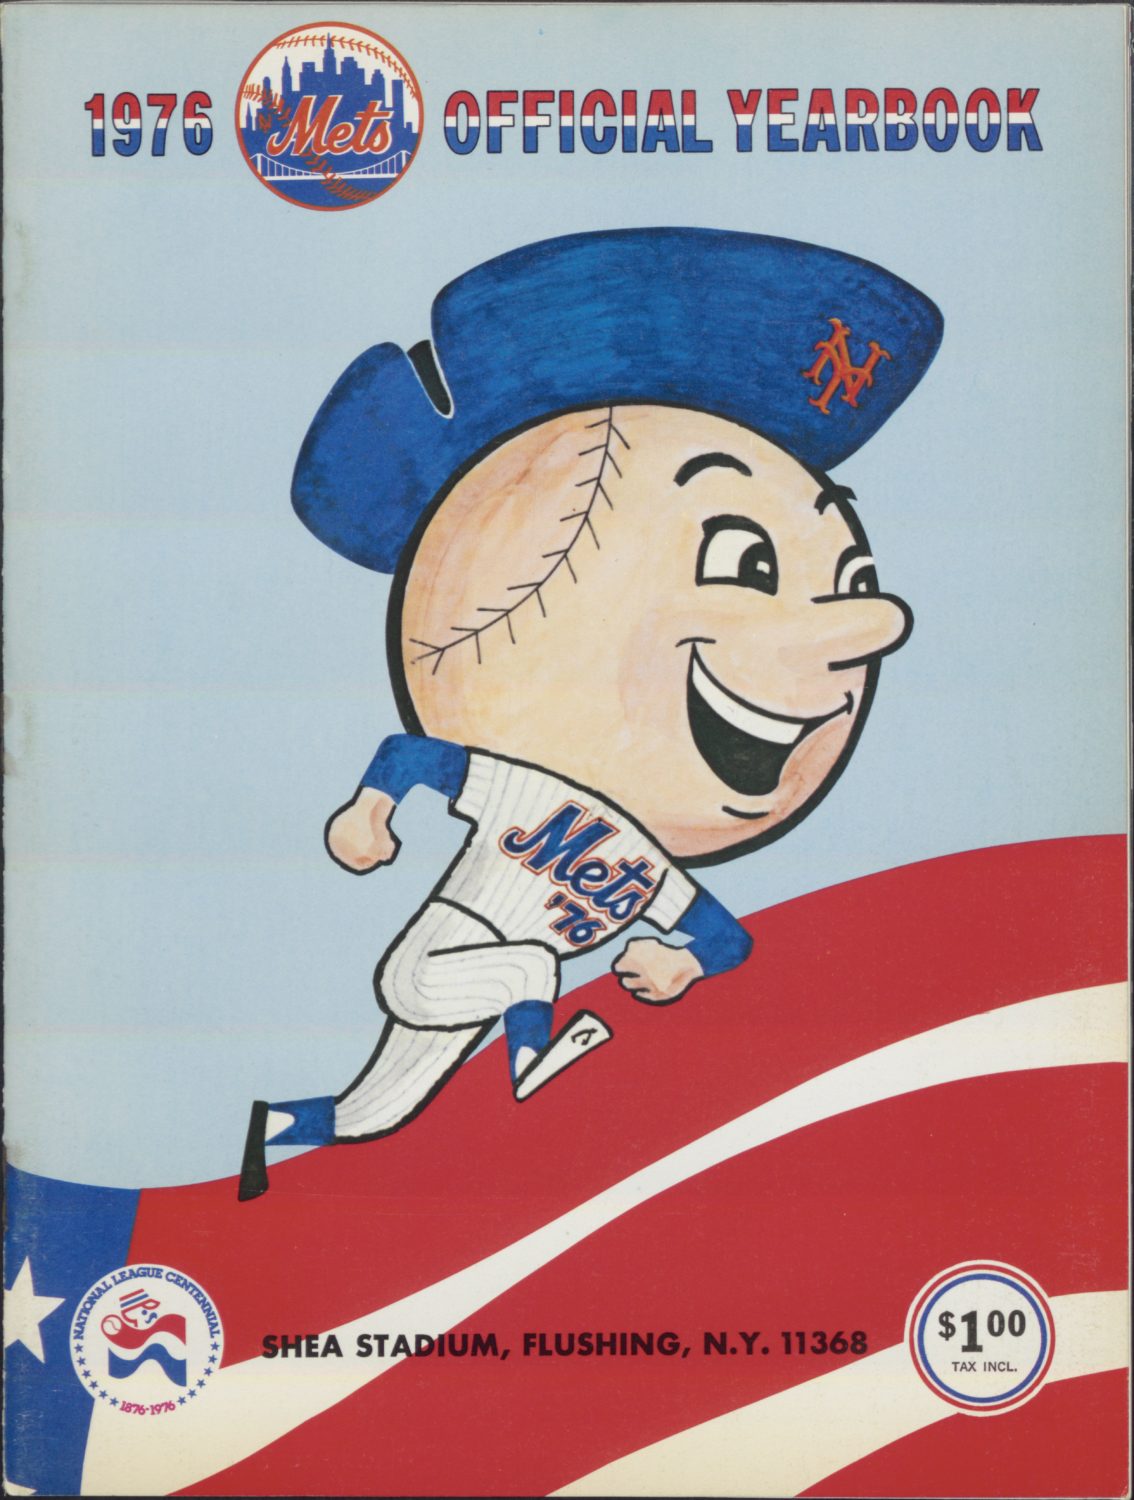 1976 Mets Yearbook with Mr. Met in Bicentennial Hat